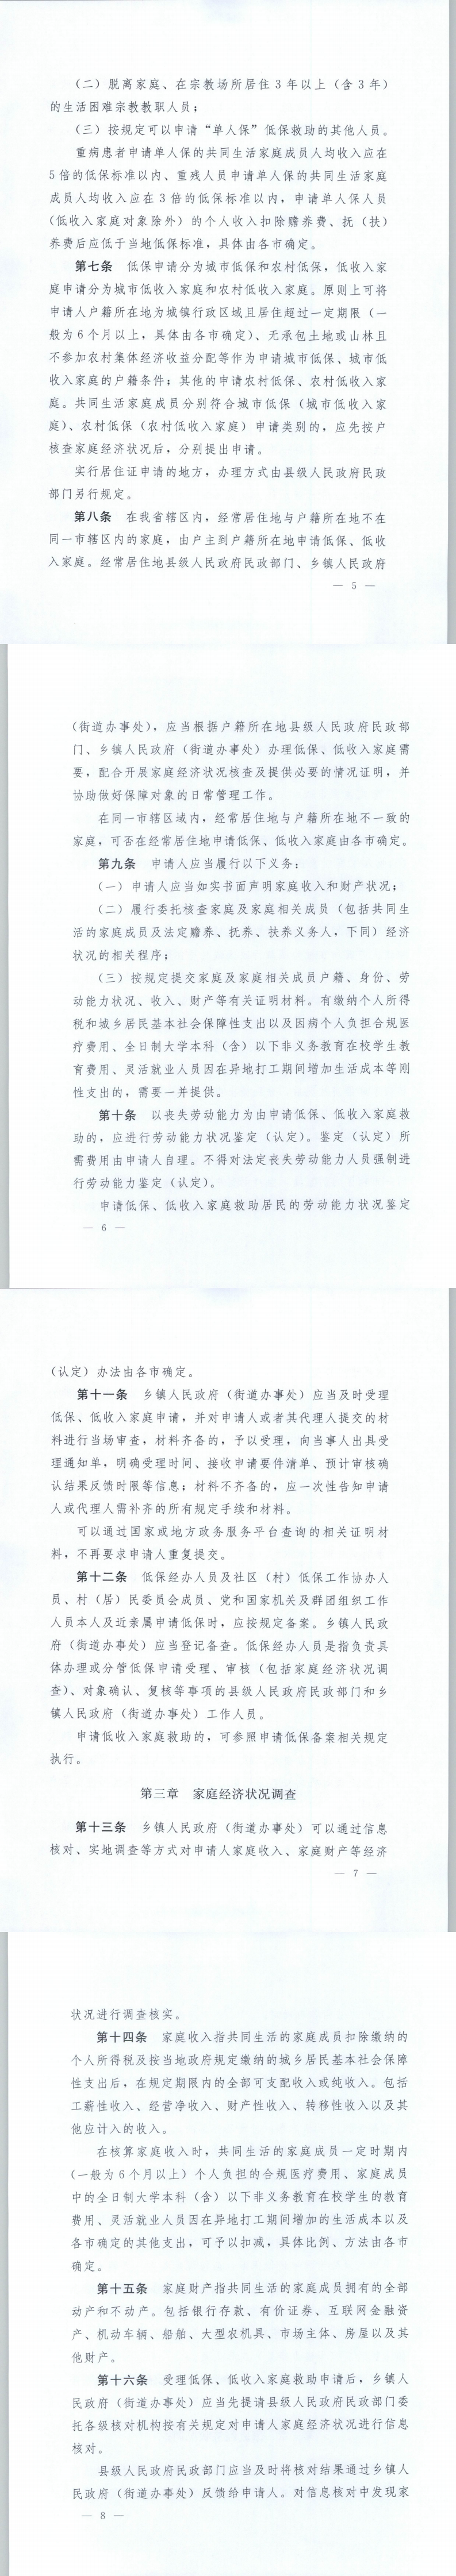 《辽宁省最低生活保障对象、低收入家庭审核确认操作规范》的通知2.png